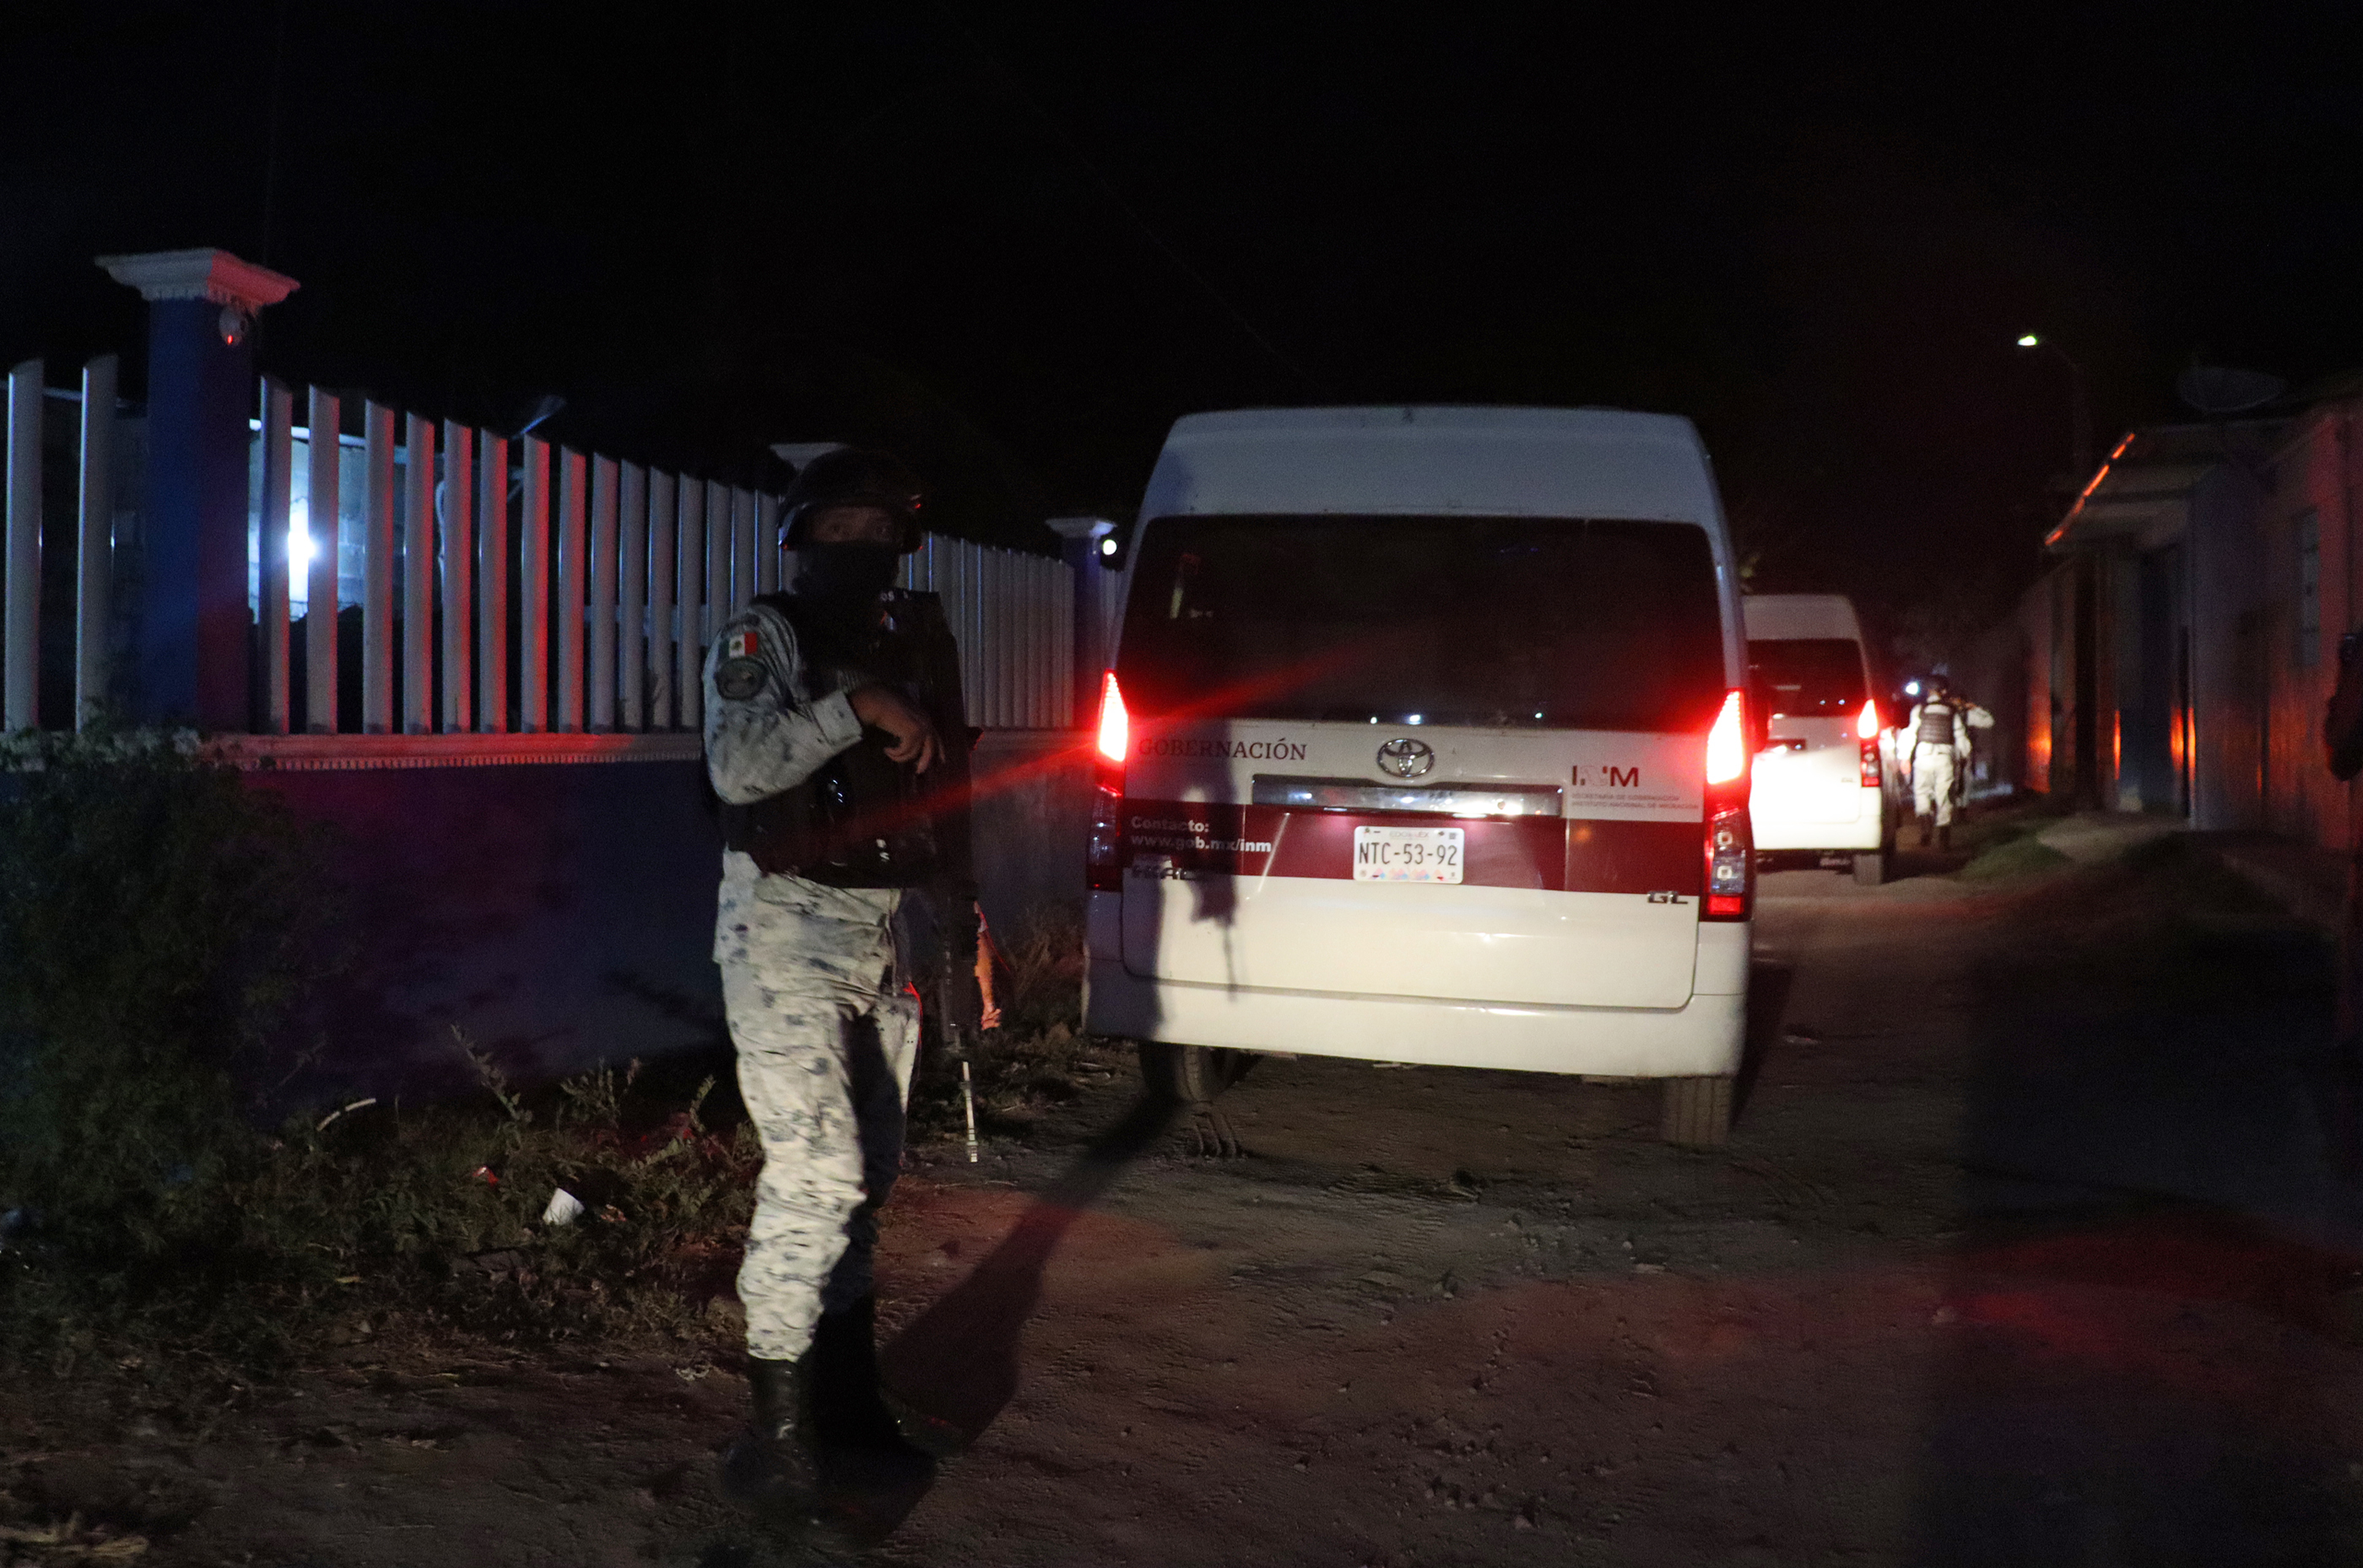 operativo para buscar a migrantes ecuatorianos desaparecidos, presuntamente secuestrados, en la localidad de Puerto Chiapas